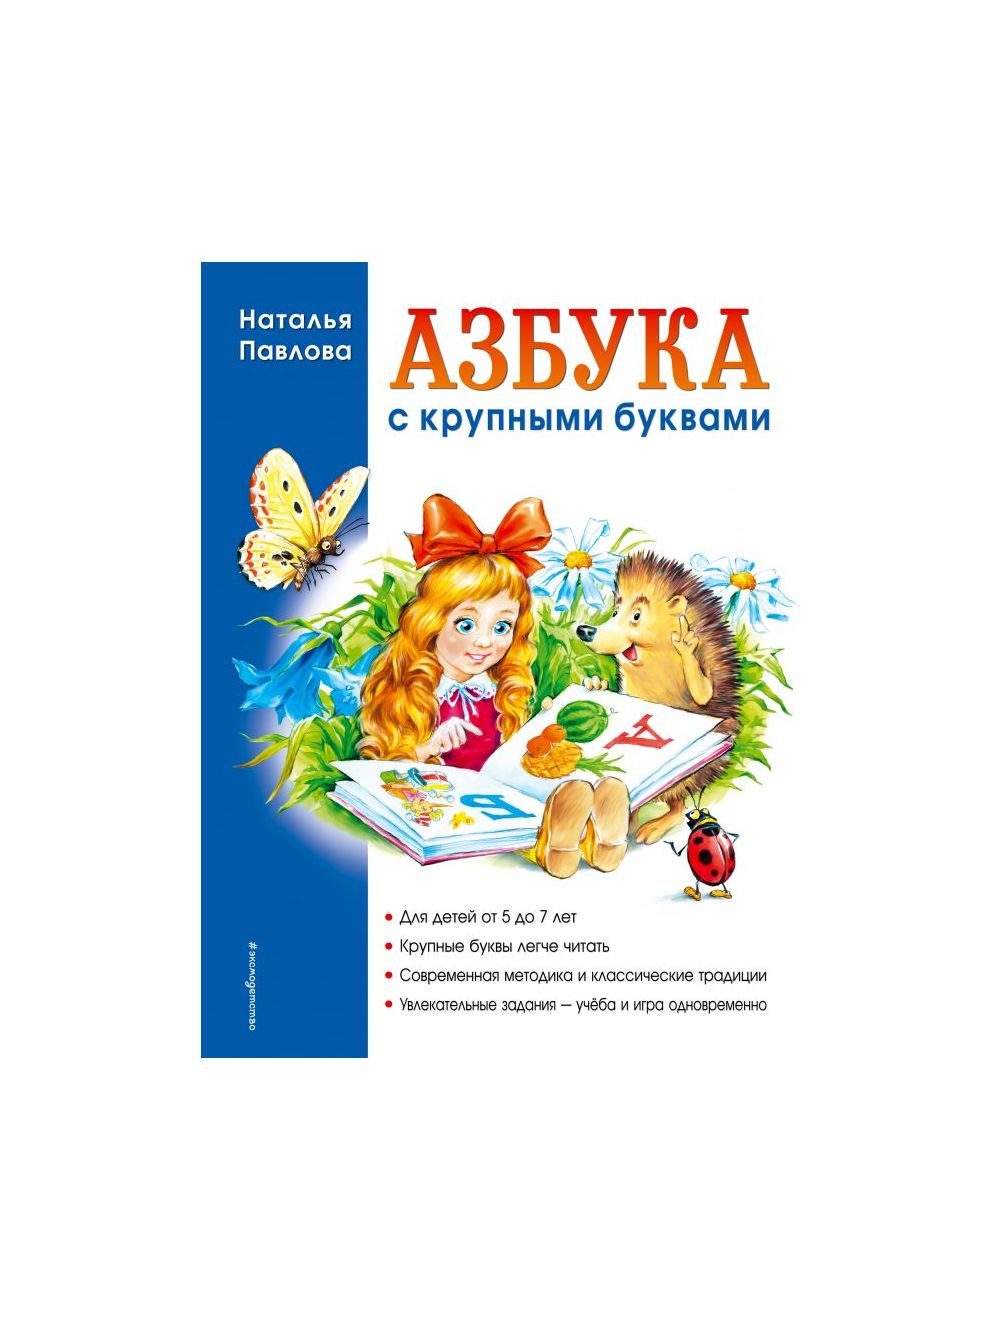 Азбука для маленьких – Книжный интернет-магазин malino-v.ru Polaris